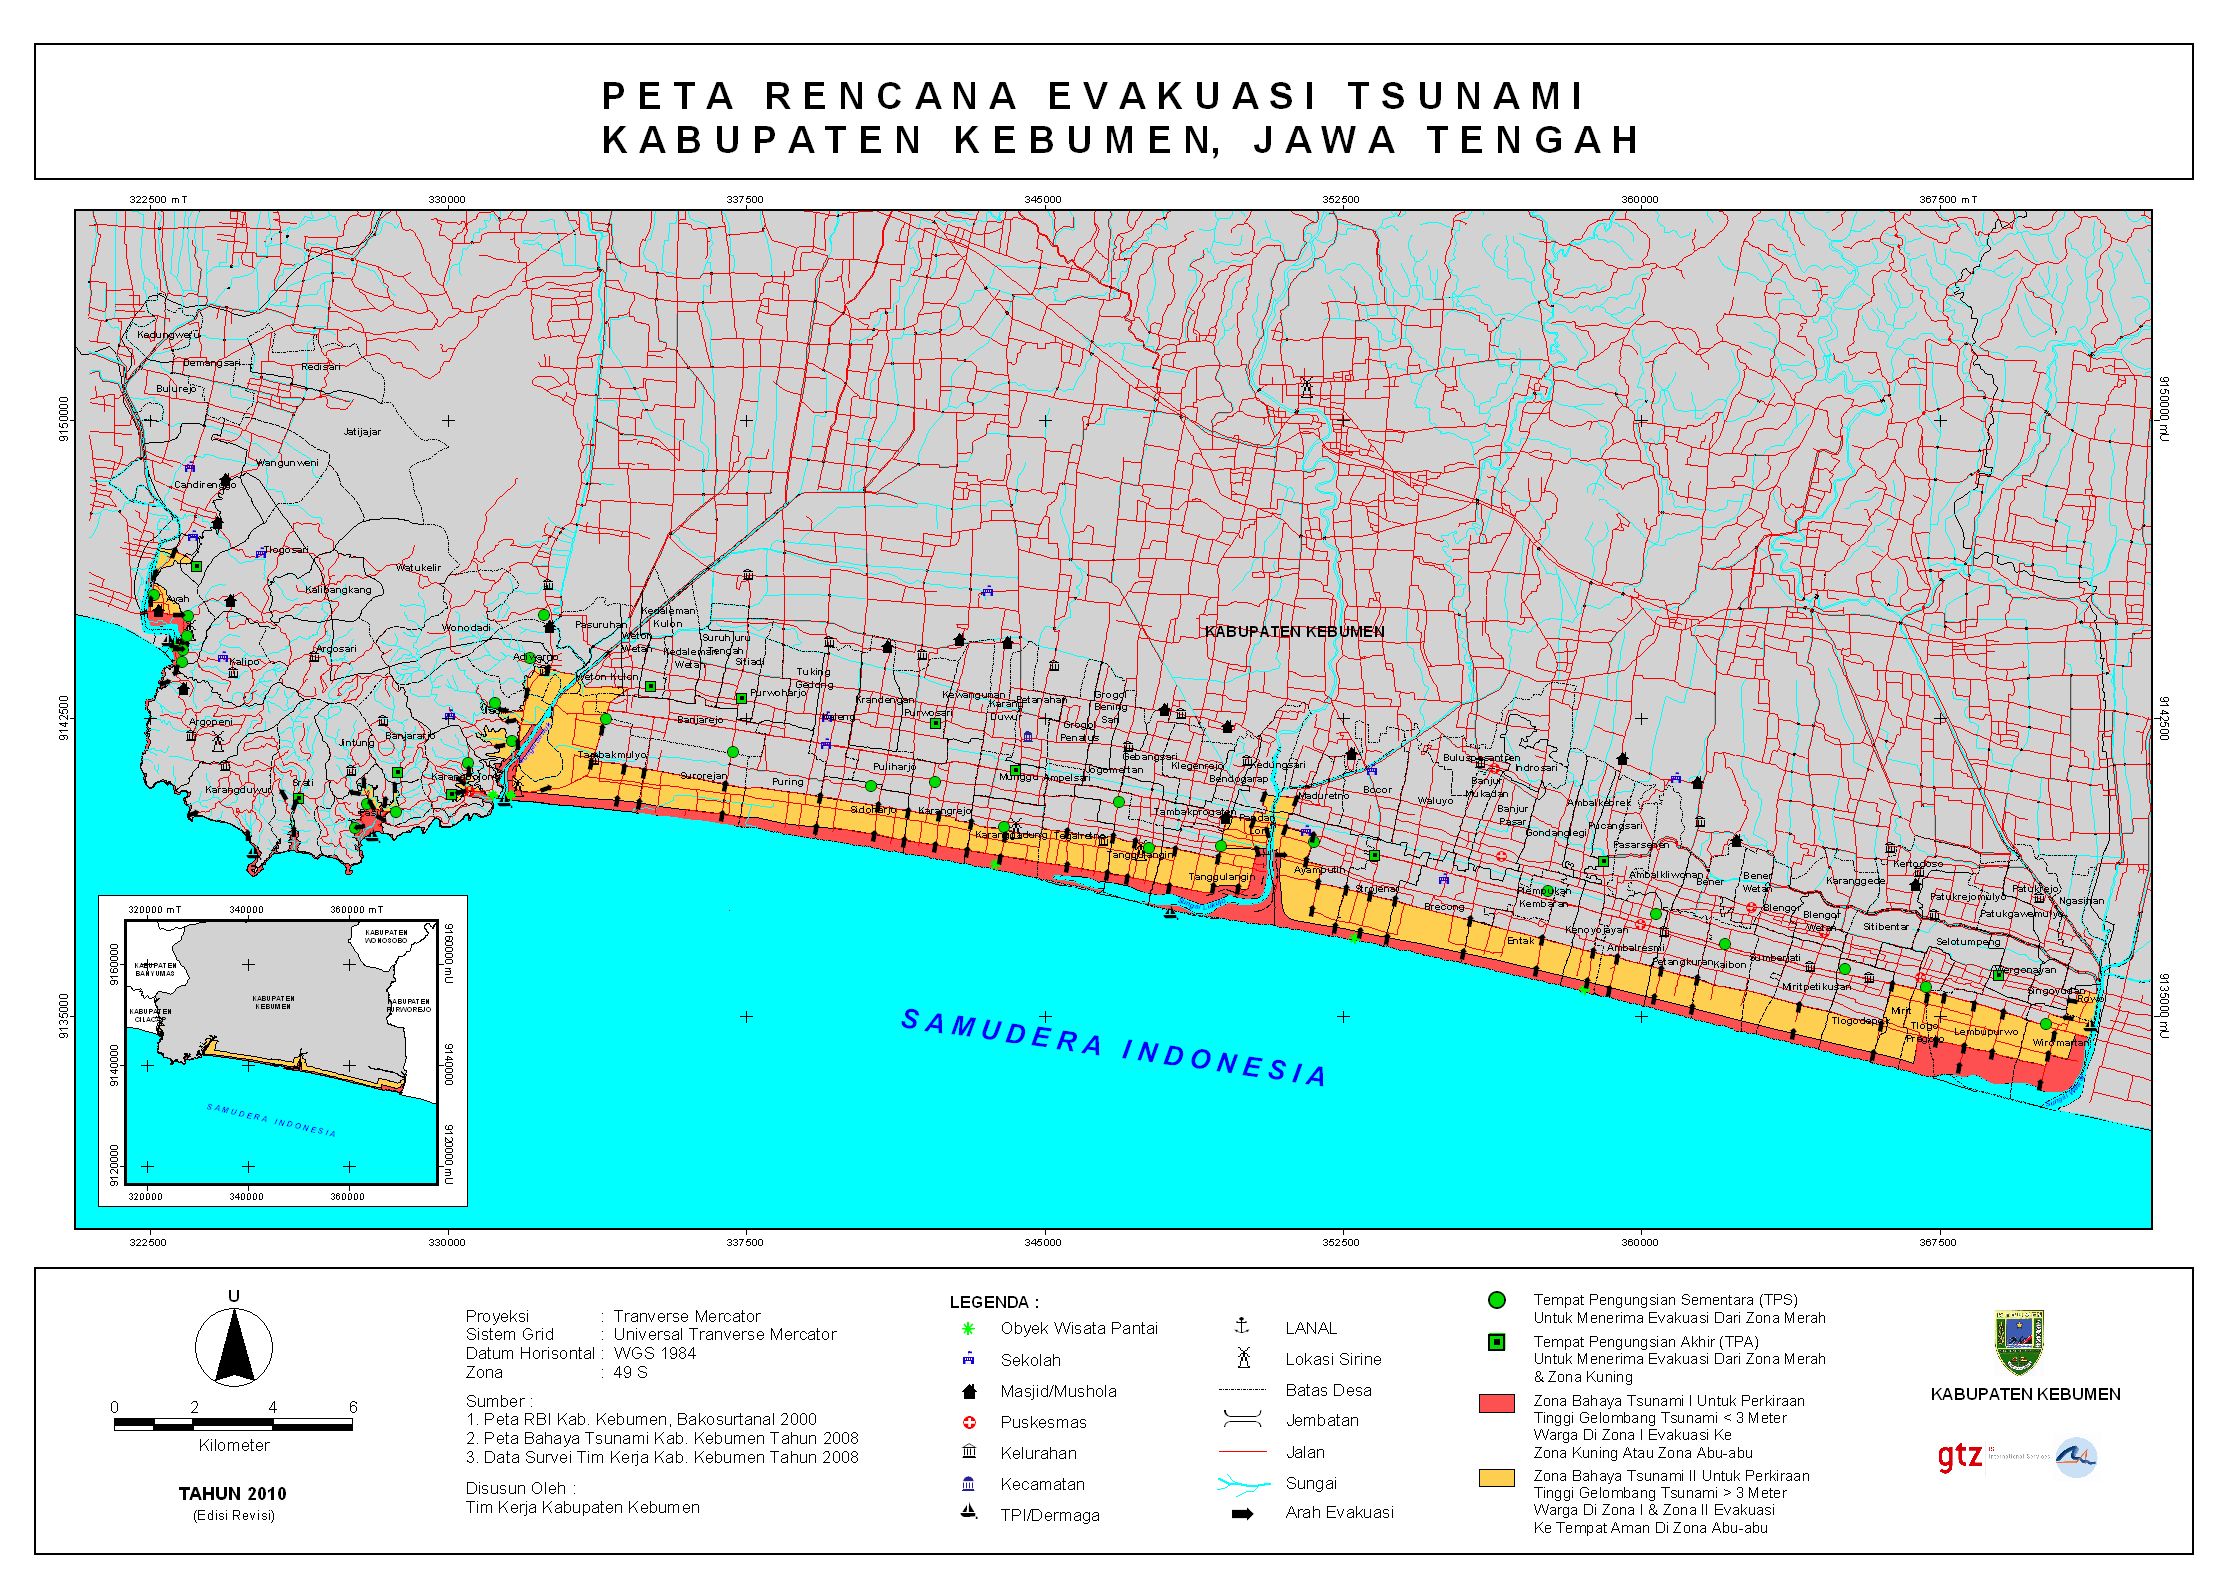 Peta Evakuasi Tsunami Kab. Kebumen. Adanya cemara udang bisa menjadi penghadang tsunami masuk lebih dalam ke daratan. http://www.gitews.org